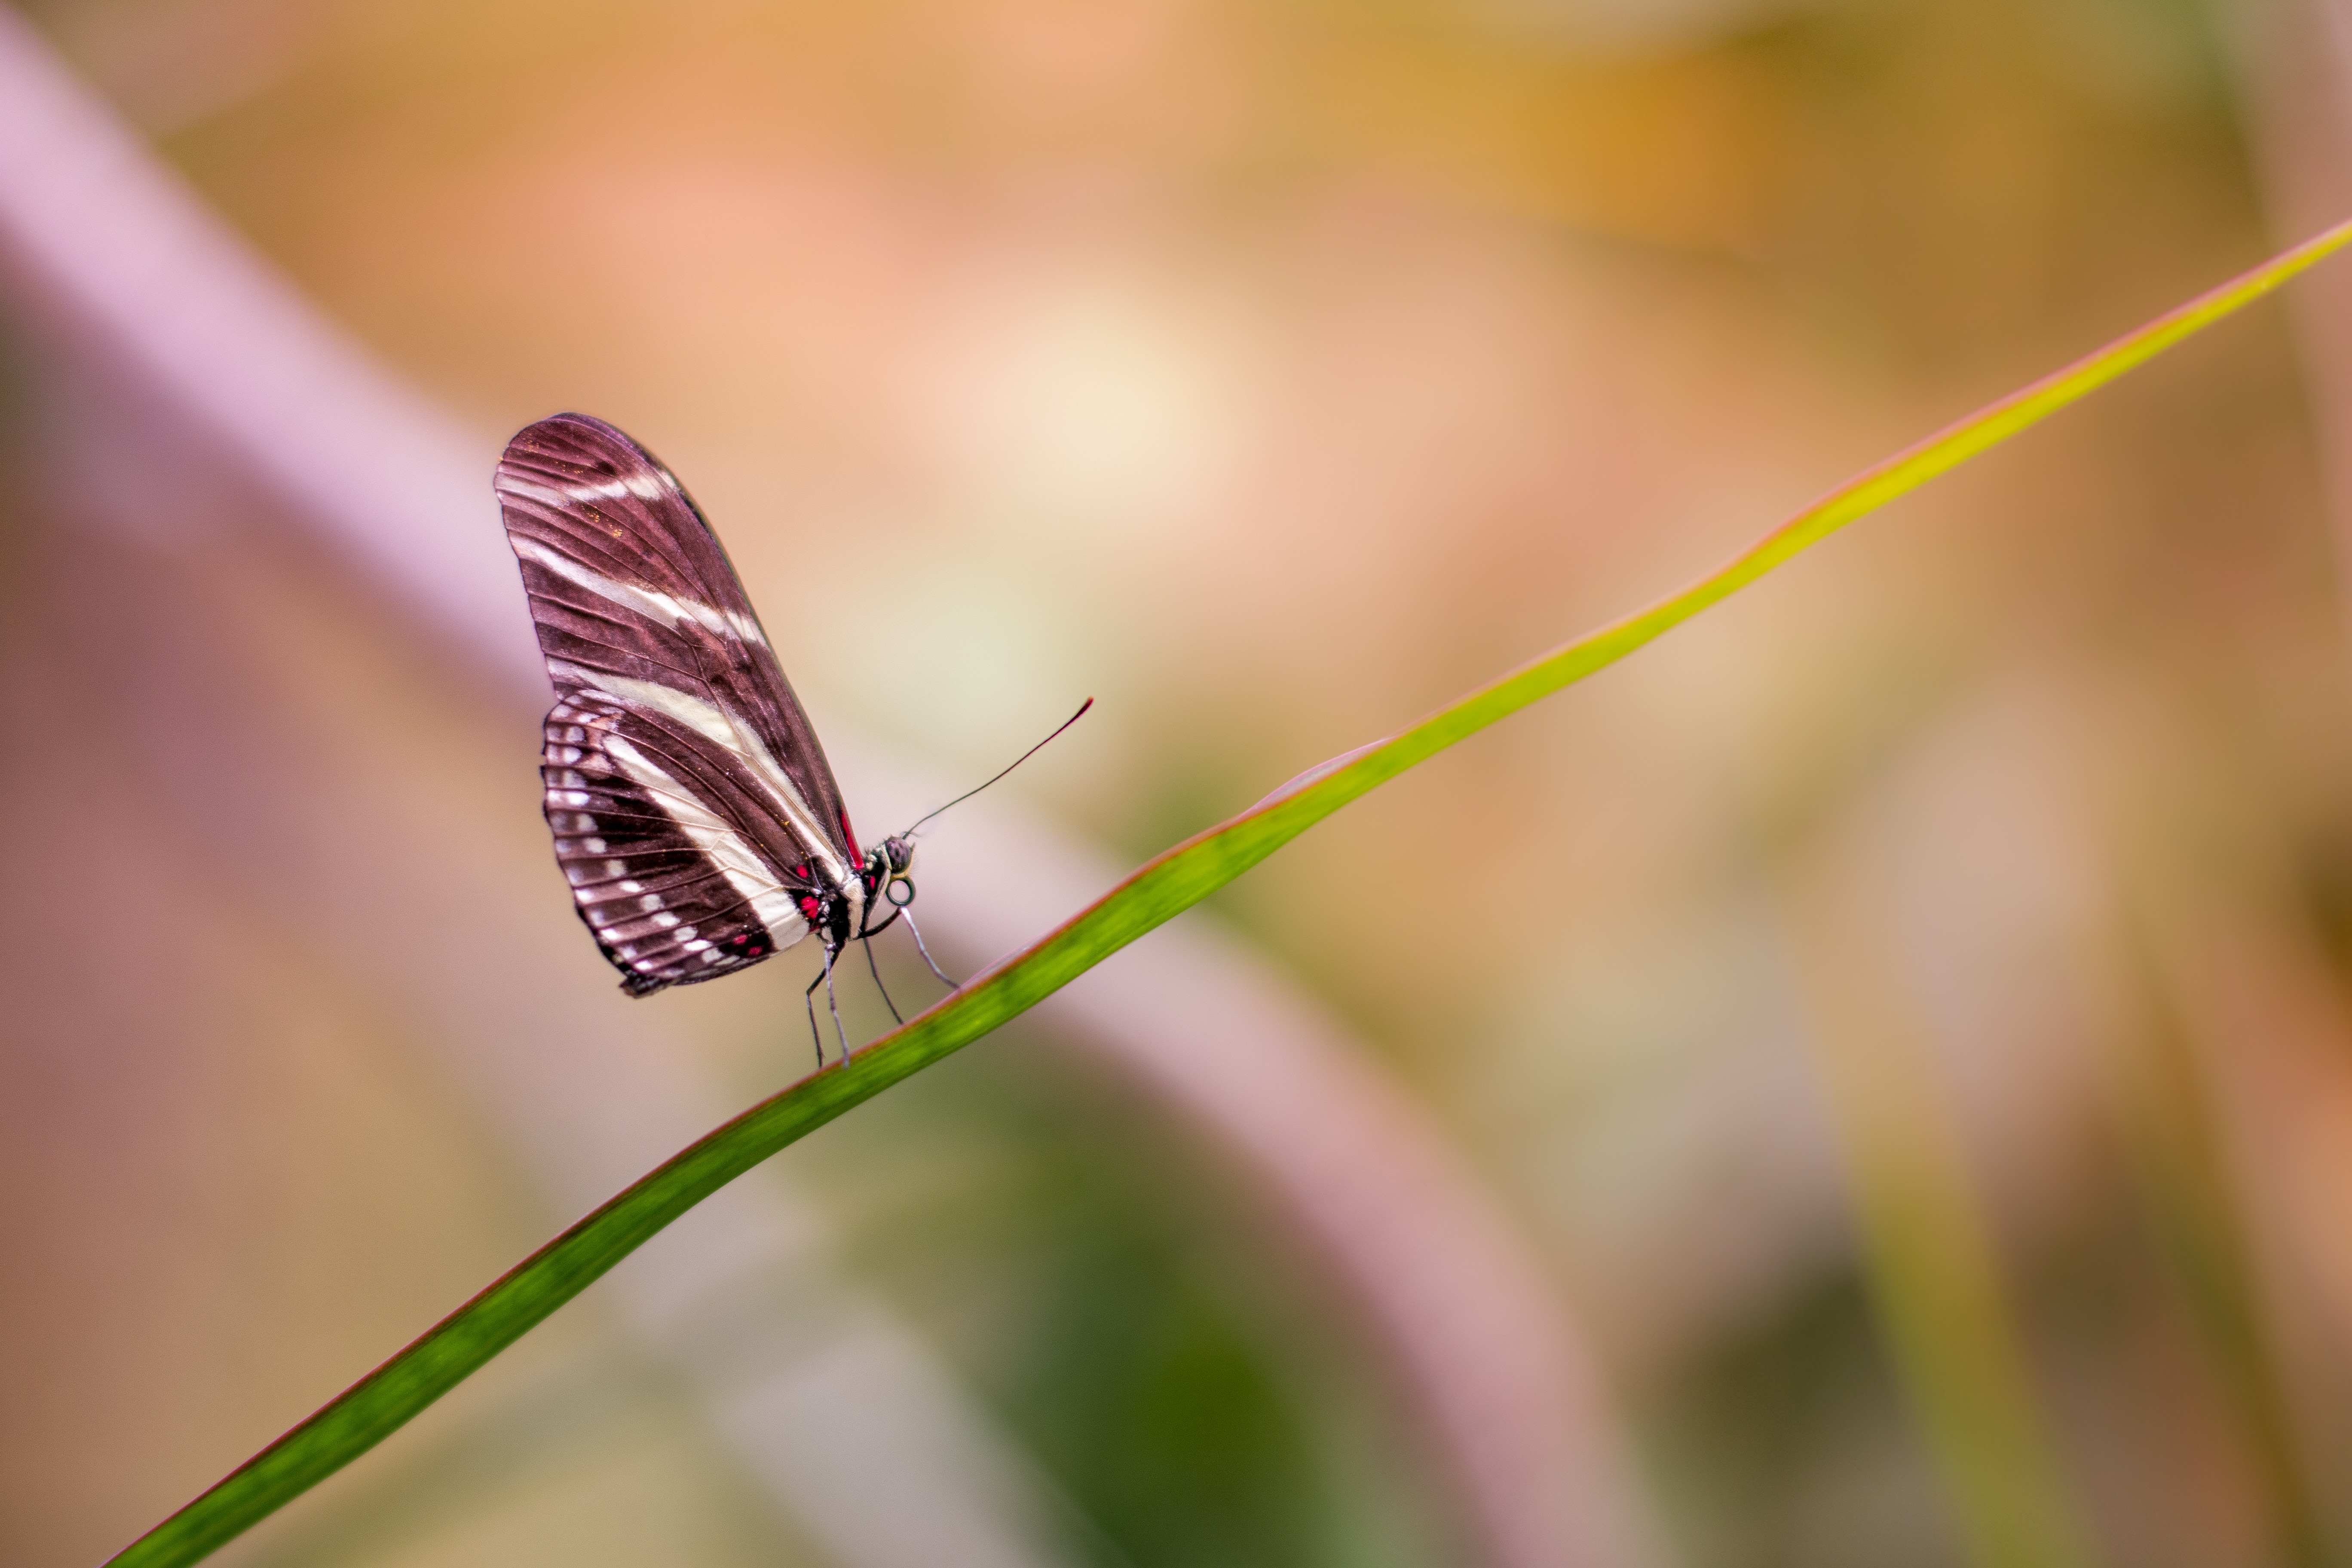 zebra longwing butterfly on green plant